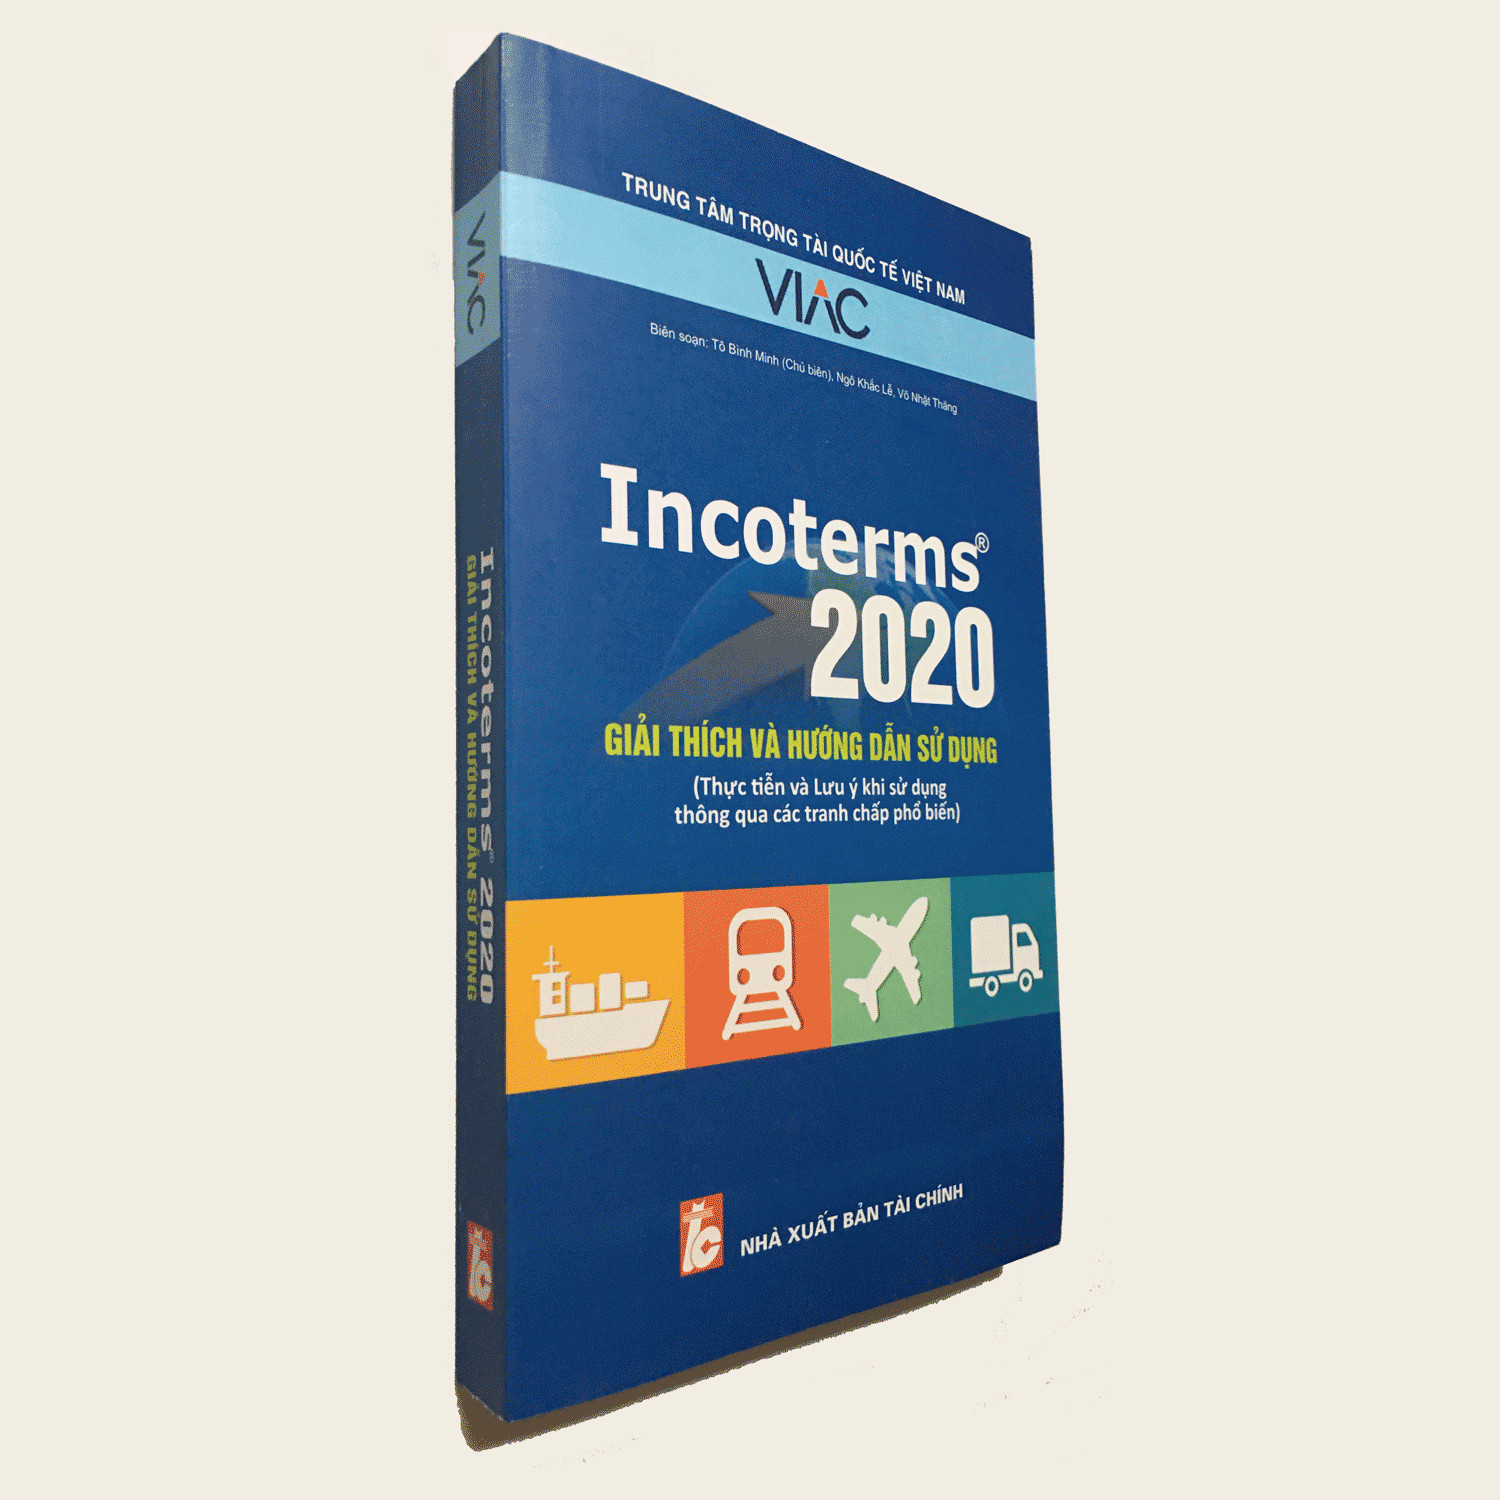 Hình ảnh Incoterms 2020 - giải thích và hướng dẫn sử dụng (Thực tiễn và Lưu ý khi sử dụng thông qua các tranh chấp phổ biến)